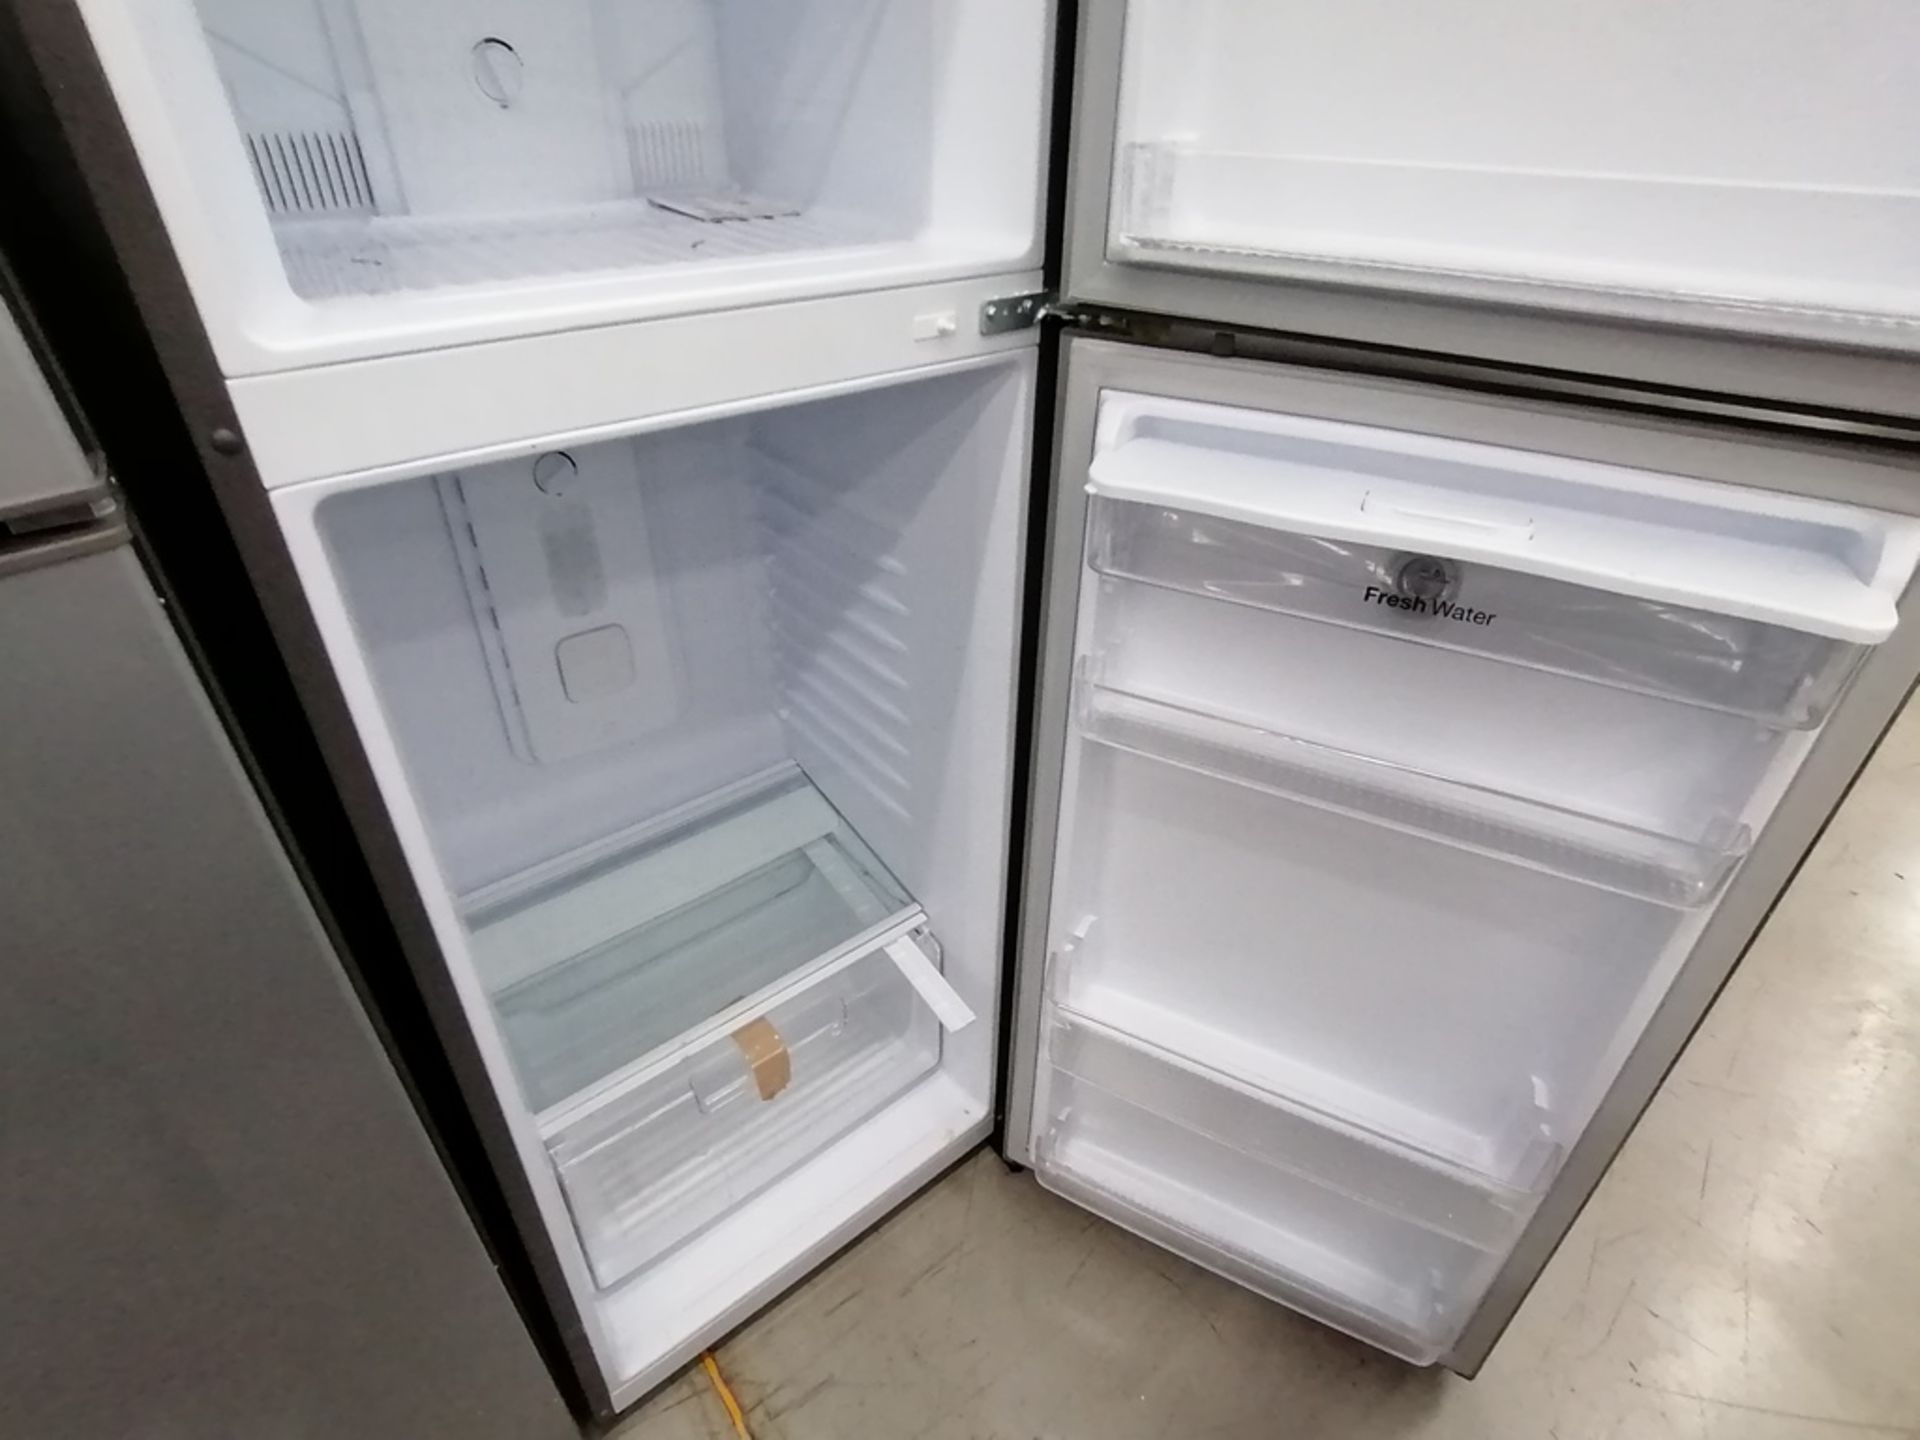 Lote de 2 refrigeradores incluye: 1 Refrigerador, Marca Winia, Modelo DFR40510GNDG, Serie MR21YN107 - Image 11 of 15